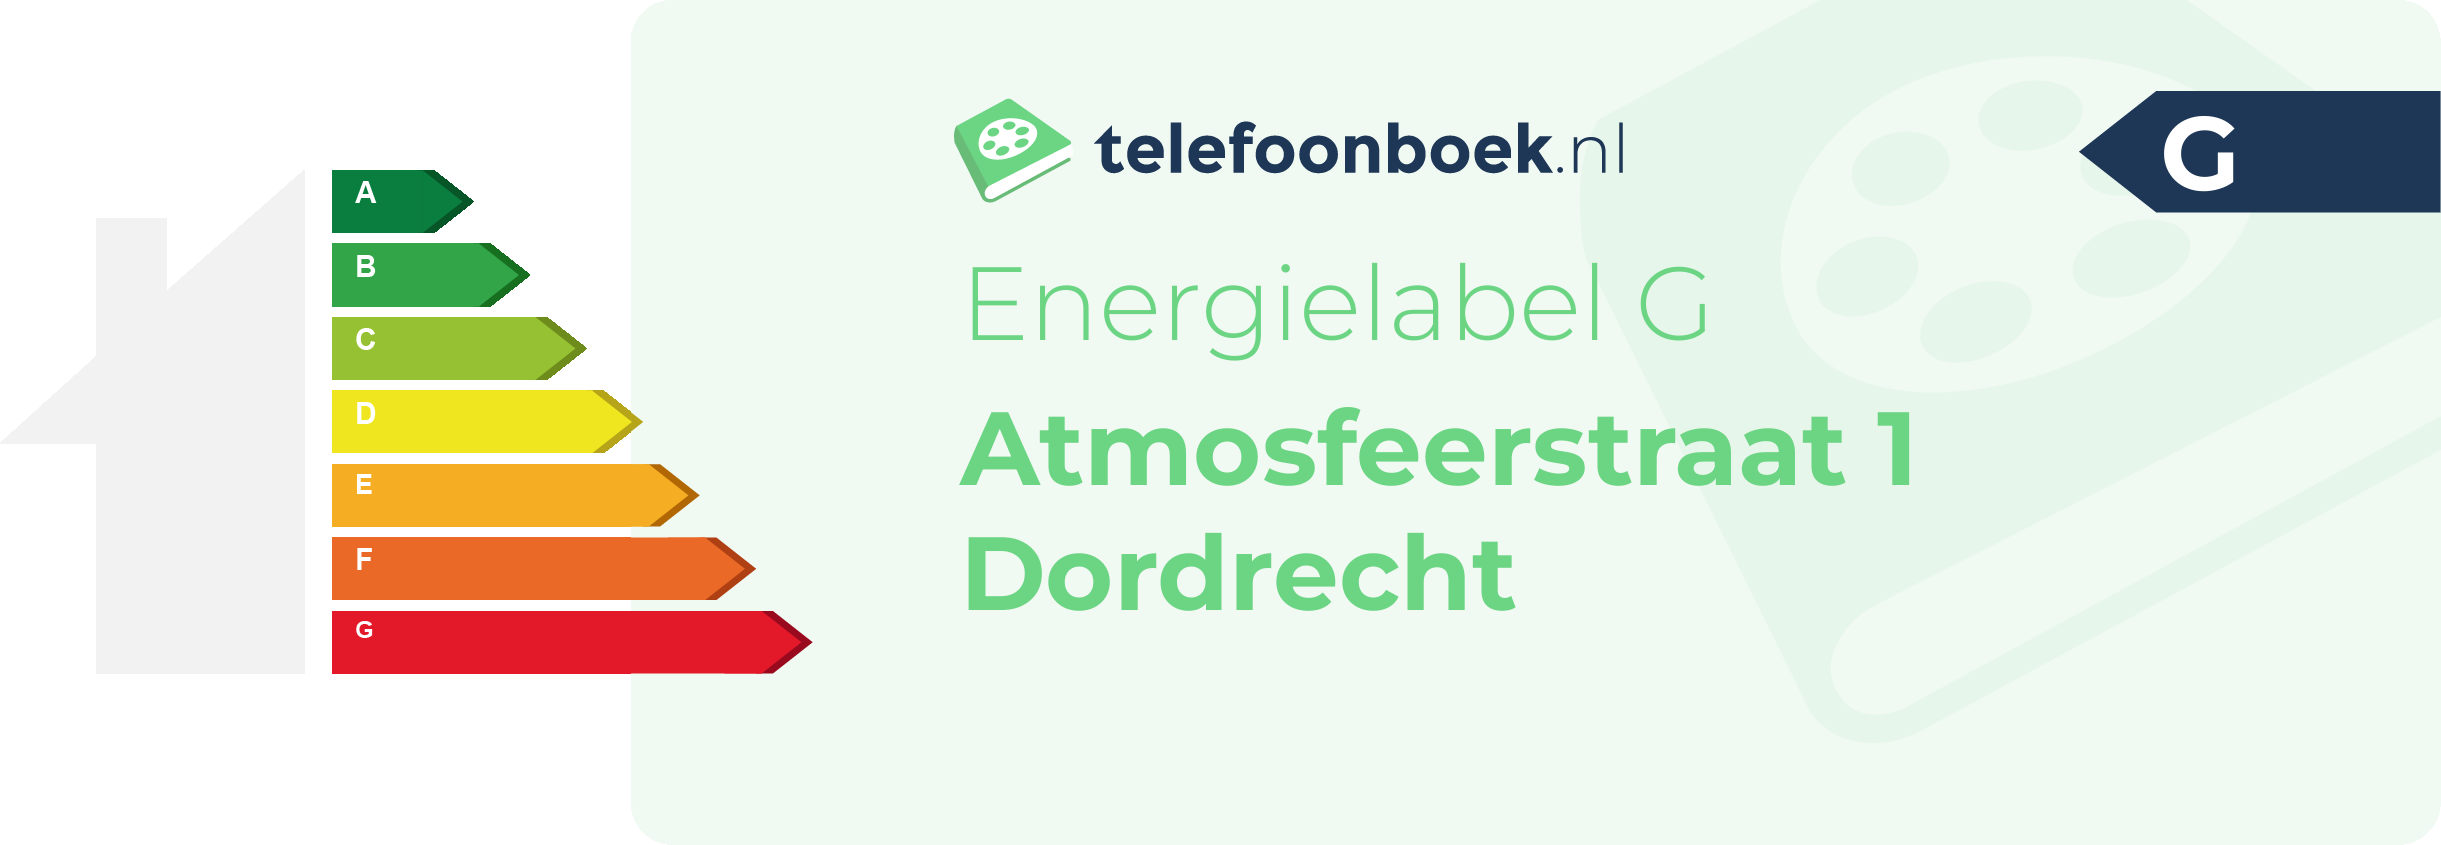 Energielabel Atmosfeerstraat 1 Dordrecht